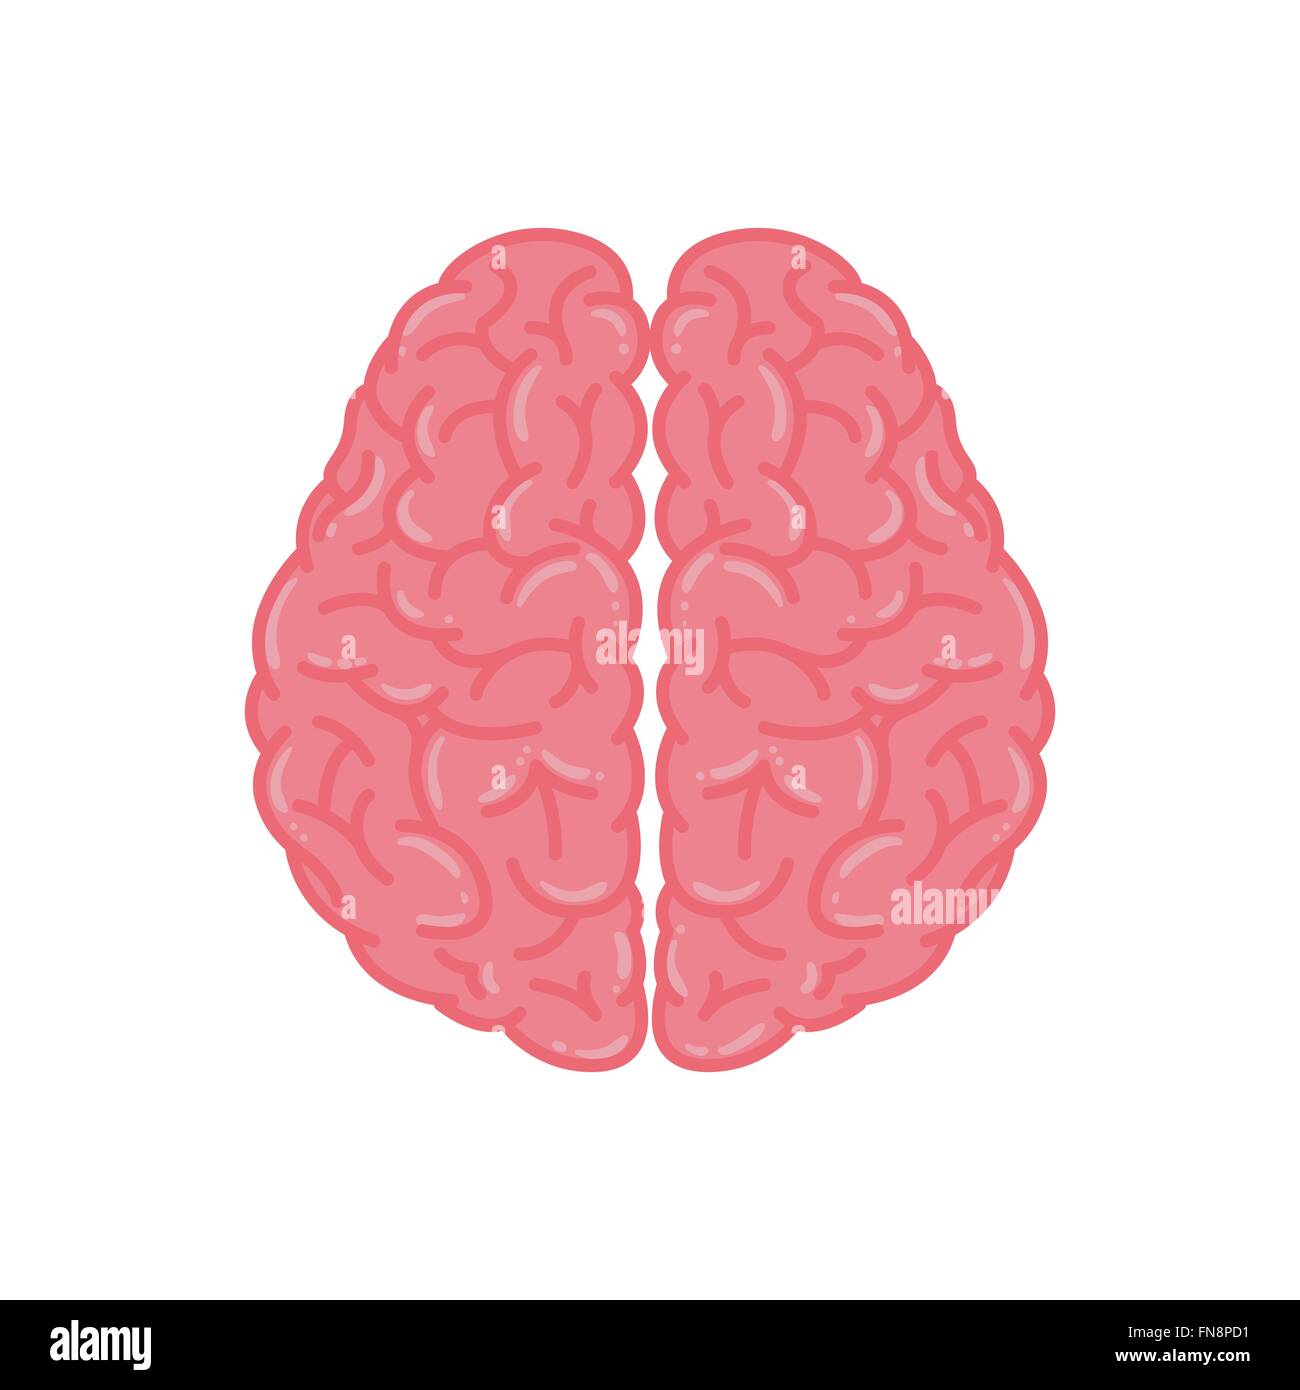 Ilustración vectorial del cerebro humano en color rosa Ilustración del Vector